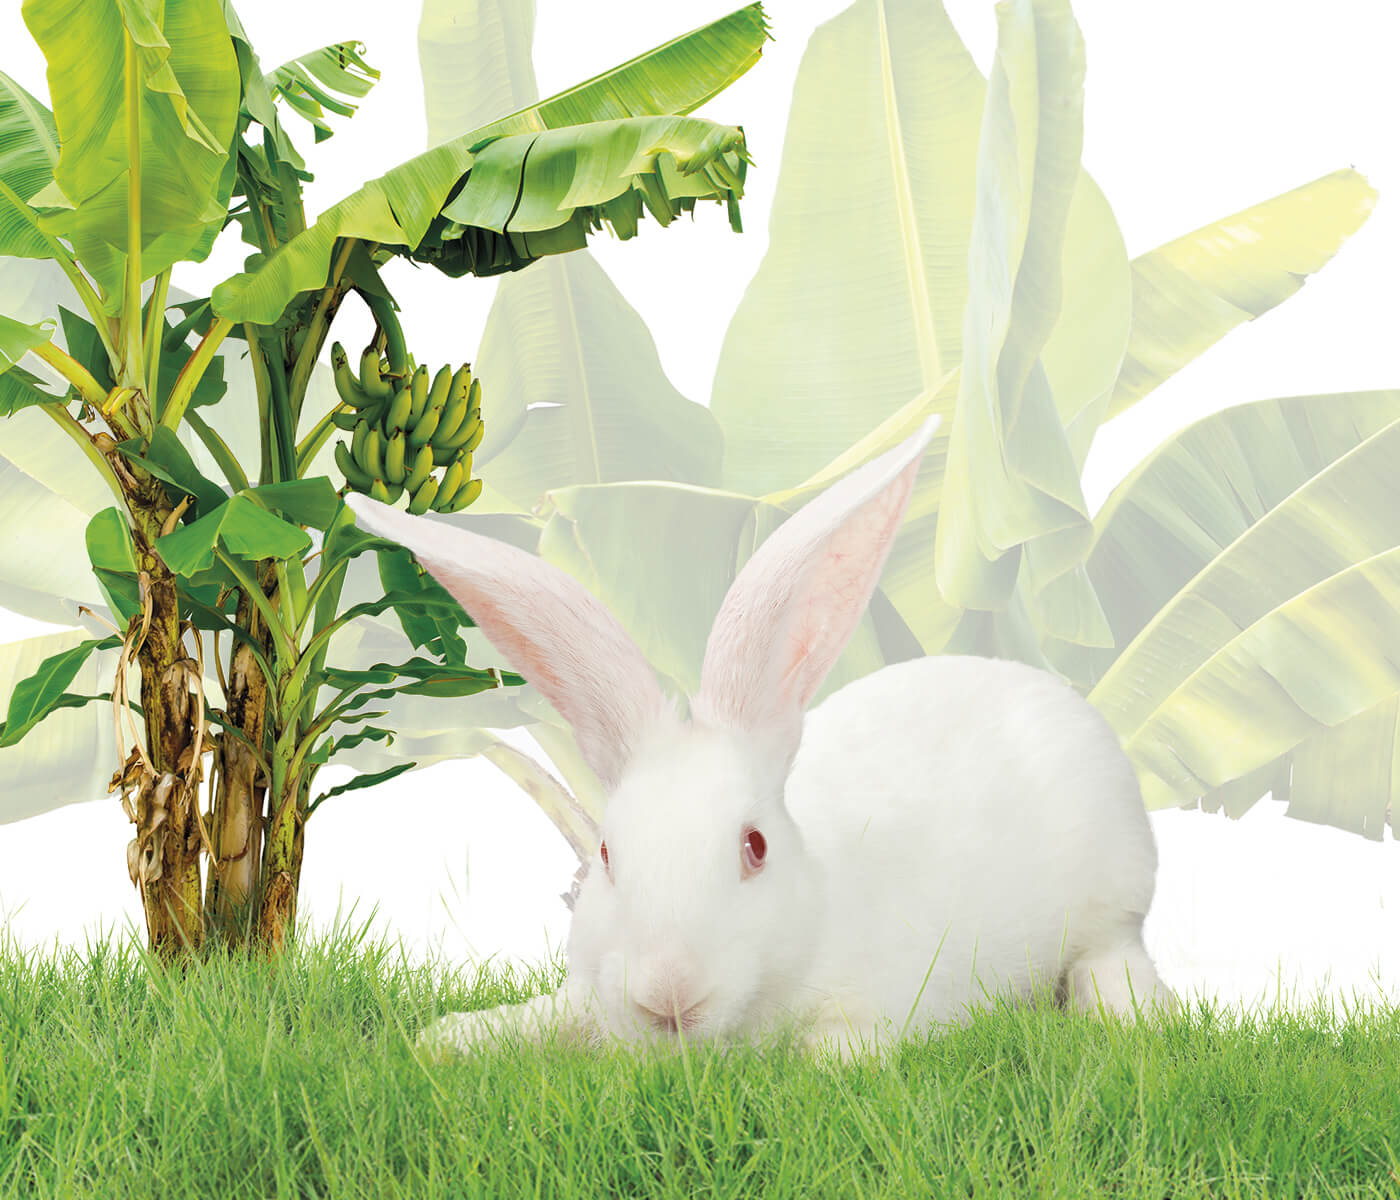 Avaliação nutricional da folha de bananeira desidratada para coelhos de corte